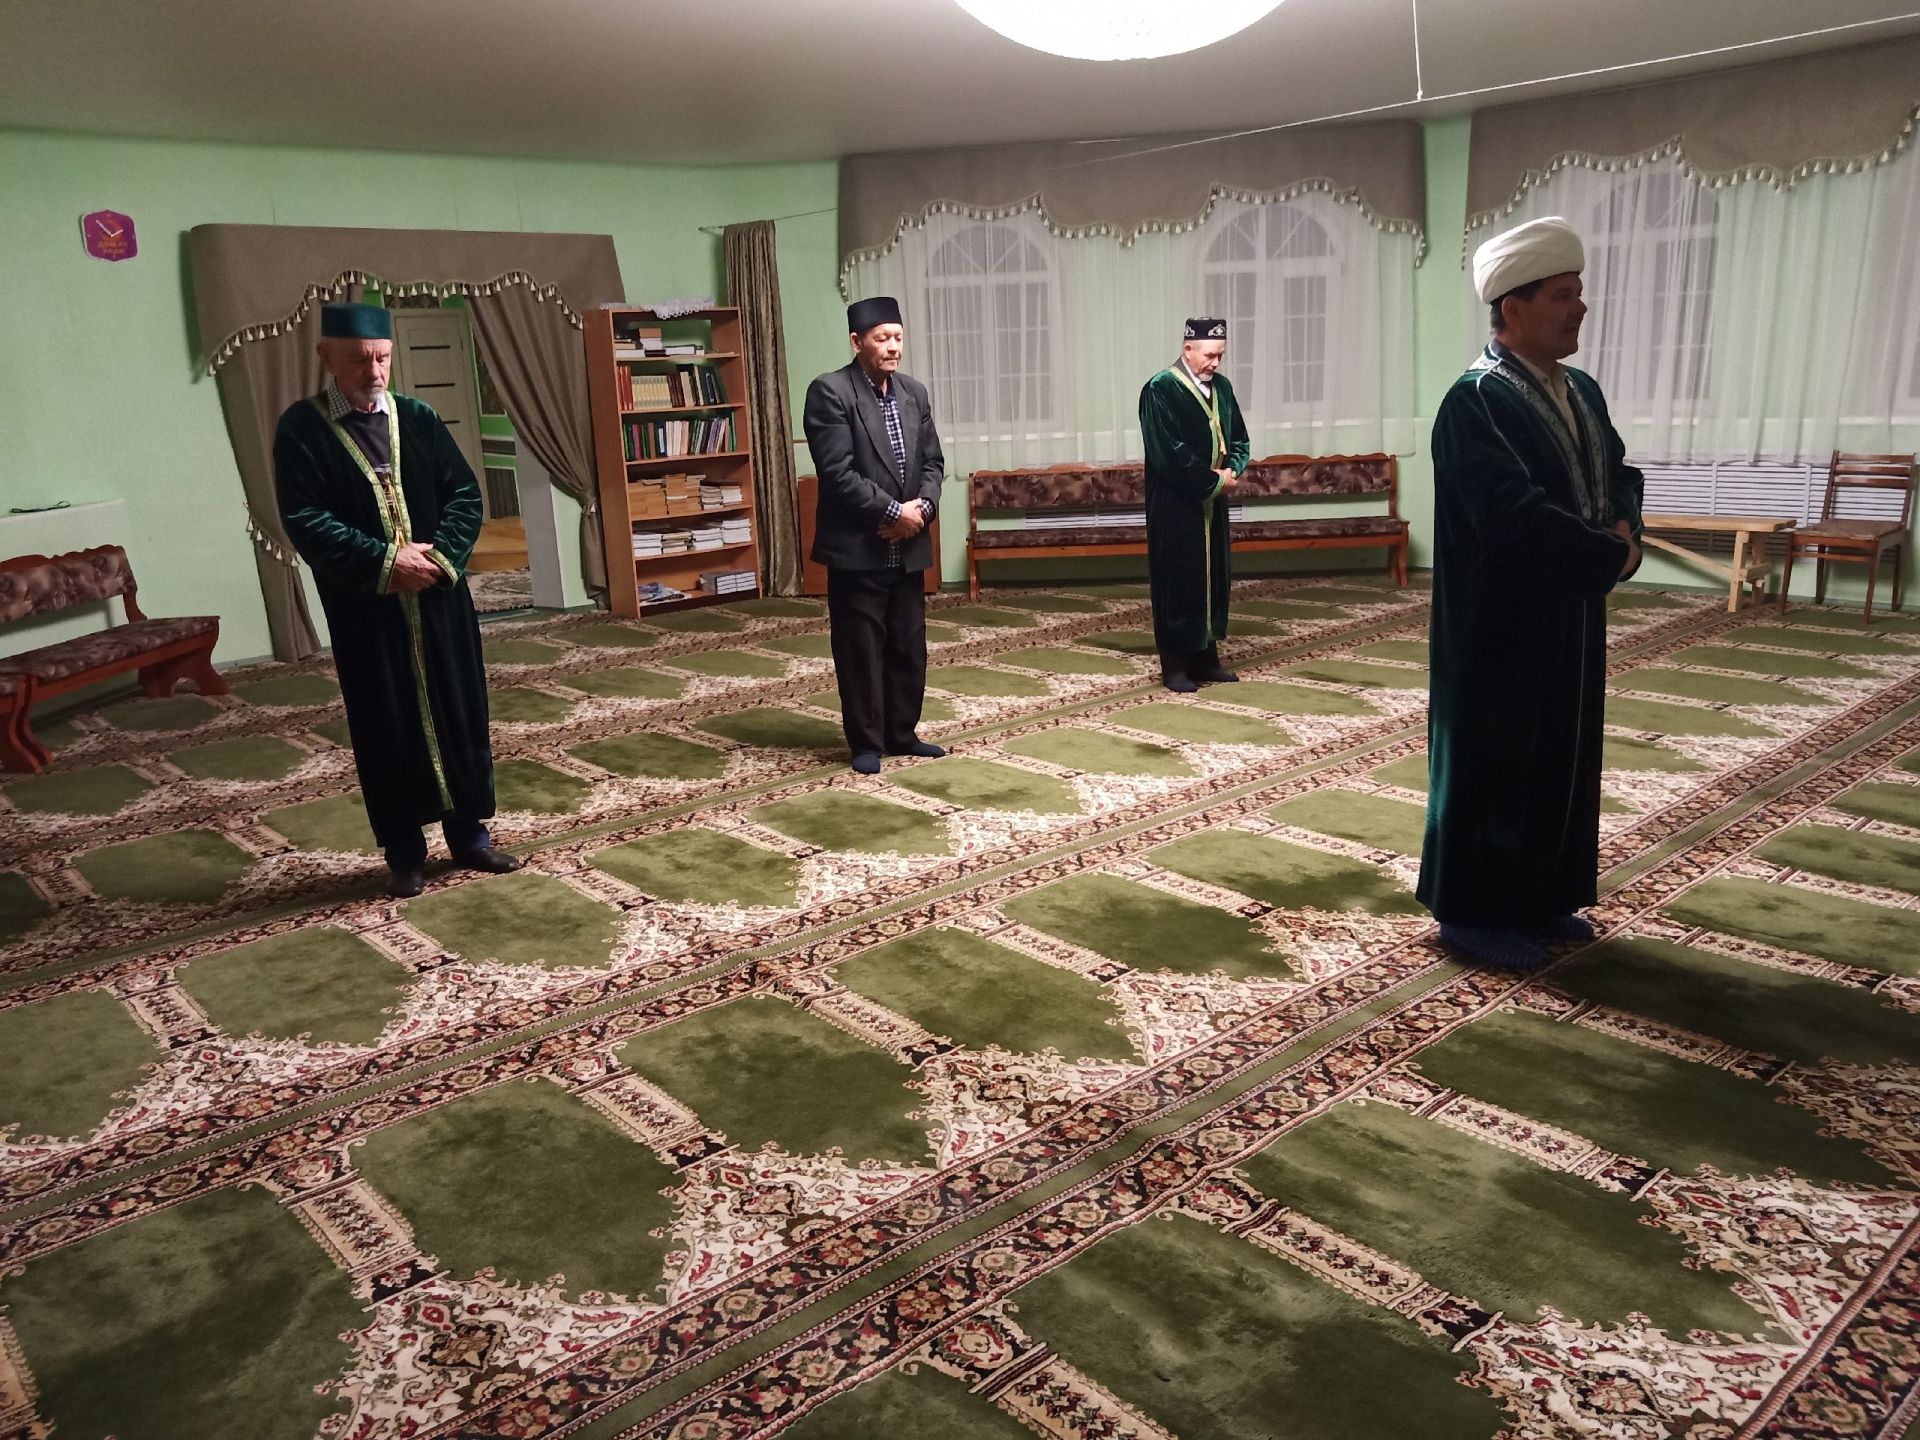 Видео: в праздник Ураза-байрам в мечети Алексеевского провели утренний намаз